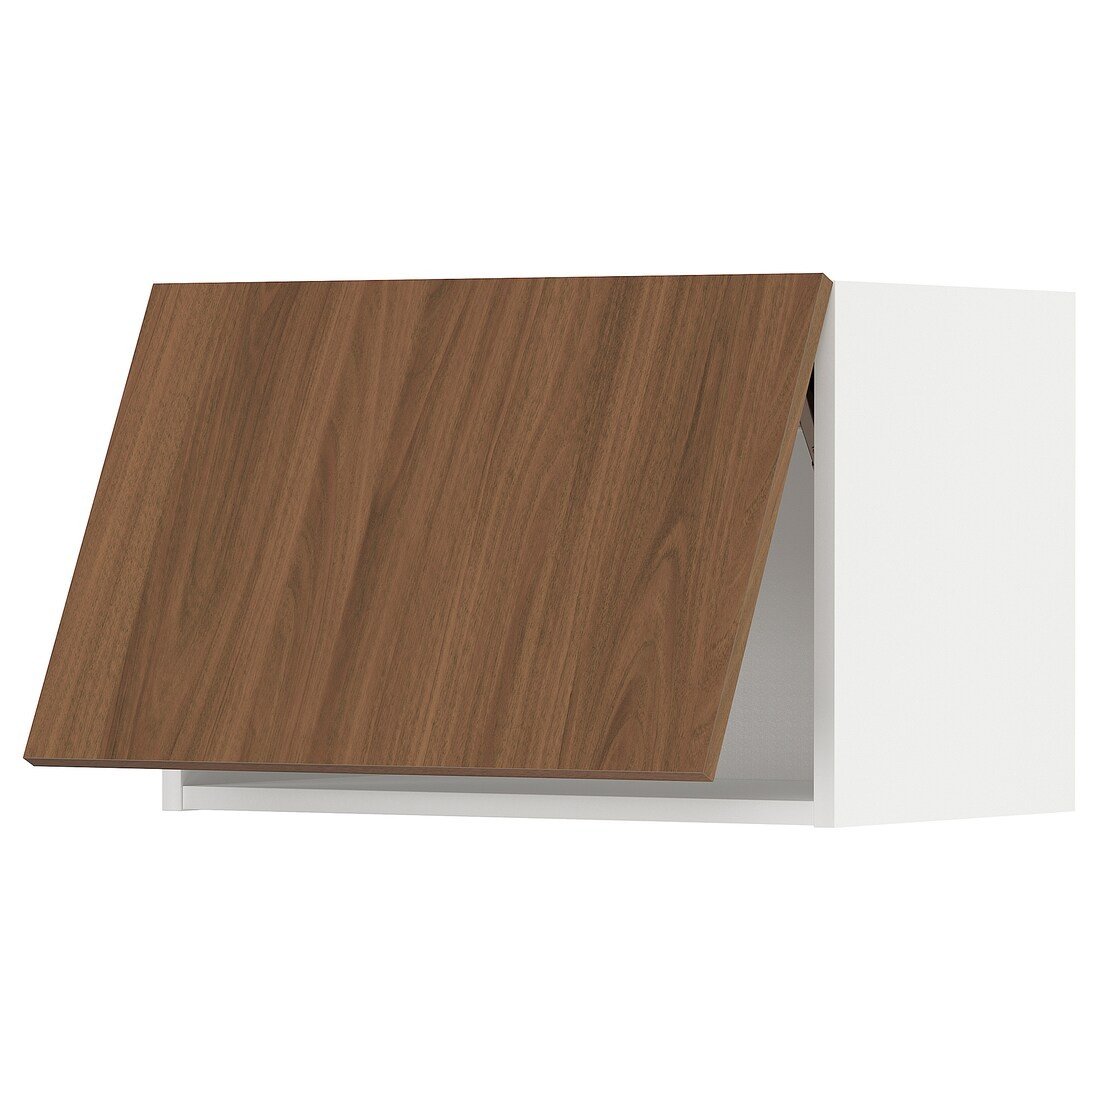 METOD Навесной горизонтальный шкаф, белый / Имитация коричневого ореха, 60x40 см